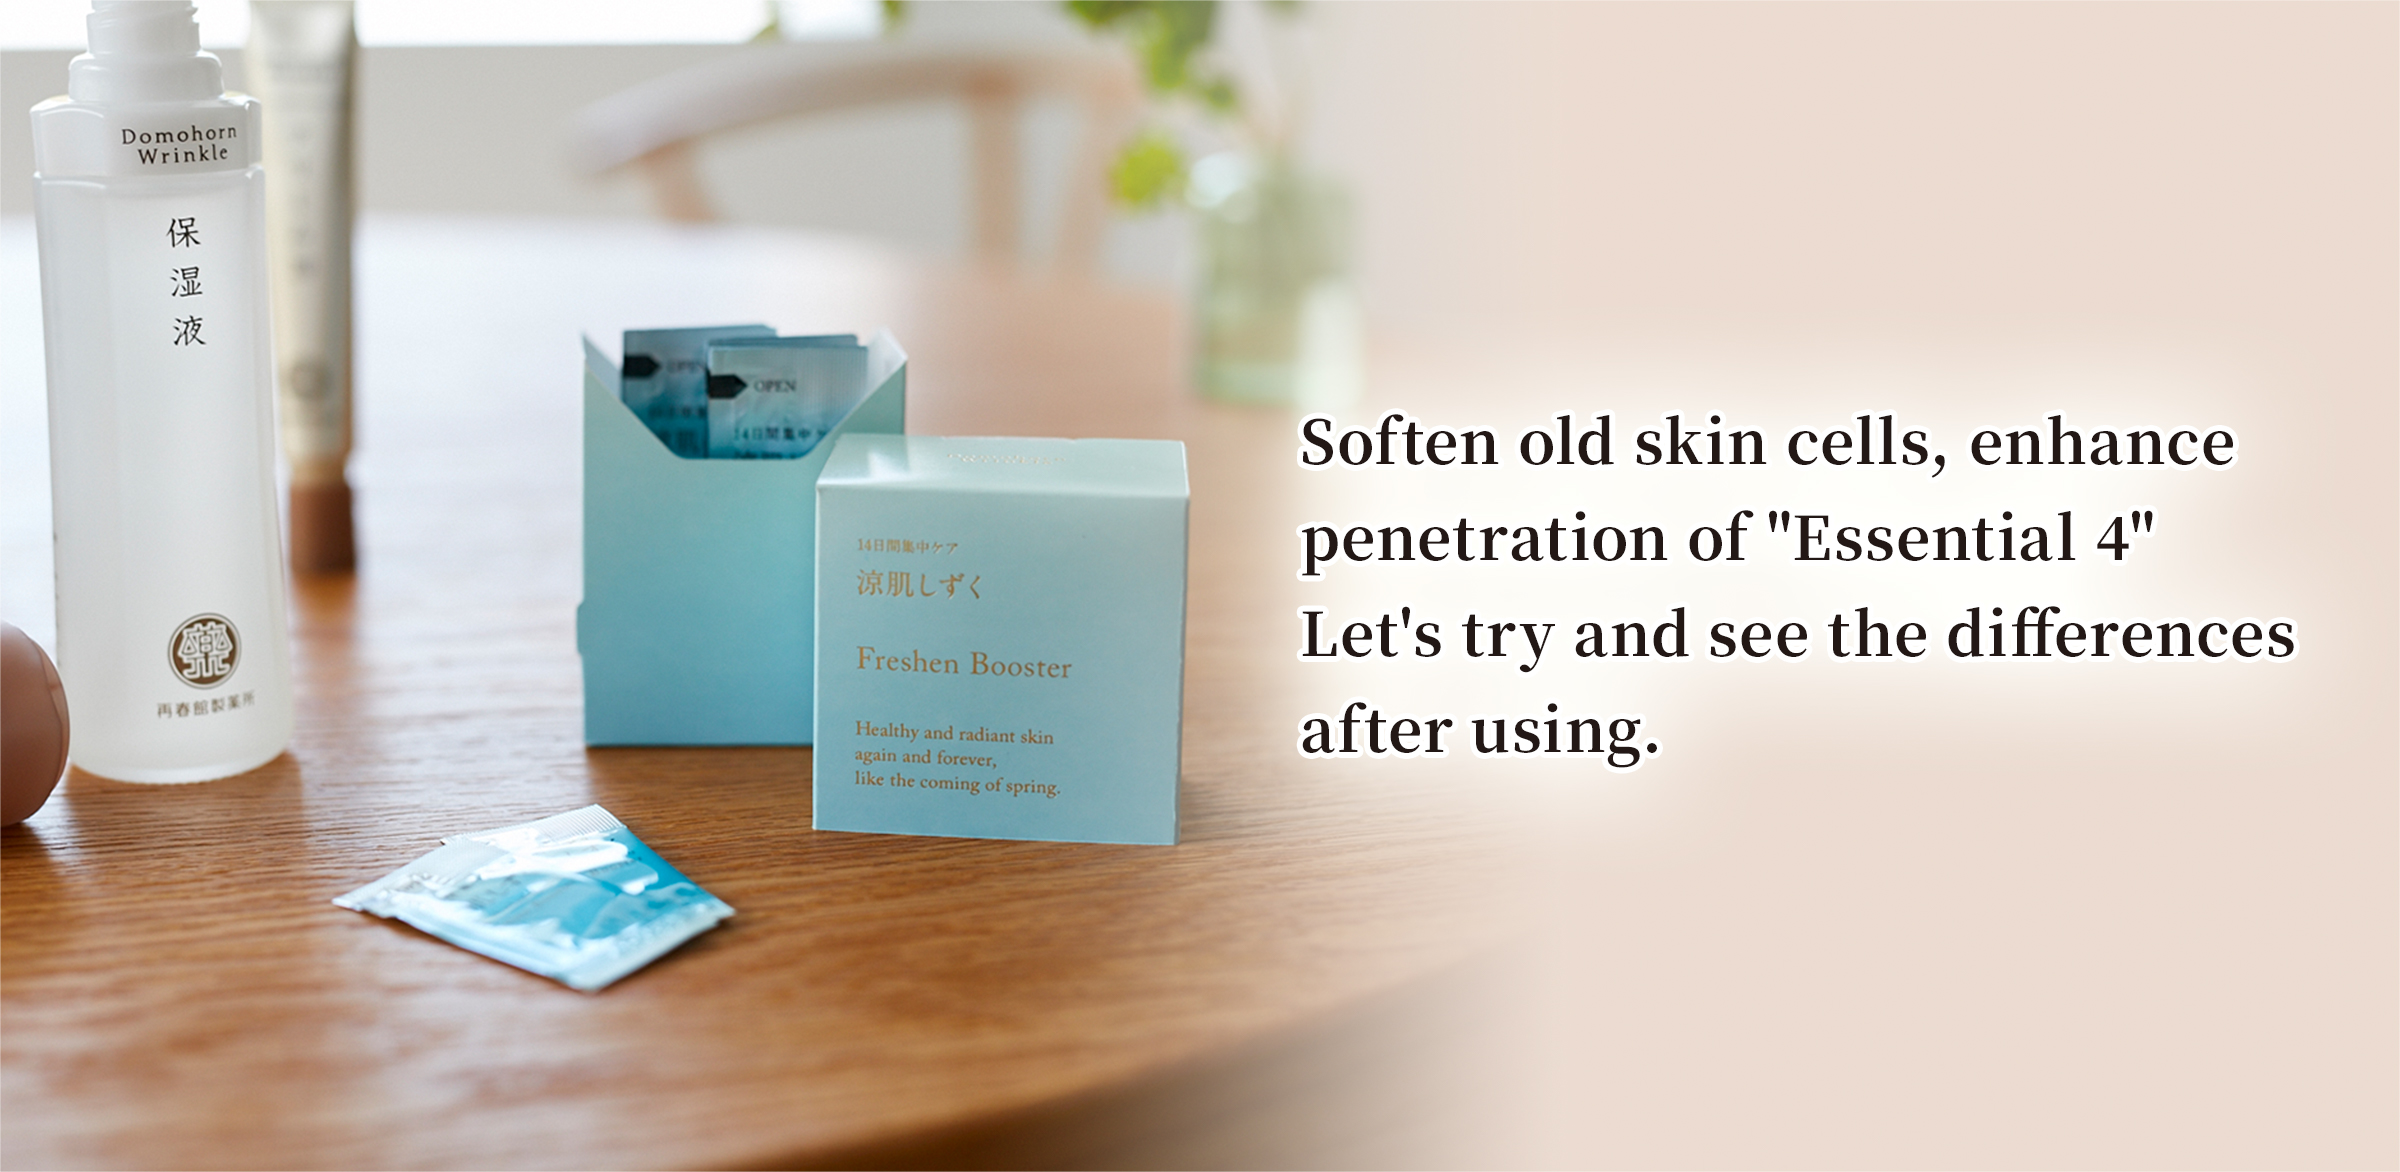 Soften old skin cells, enhance penetration of 